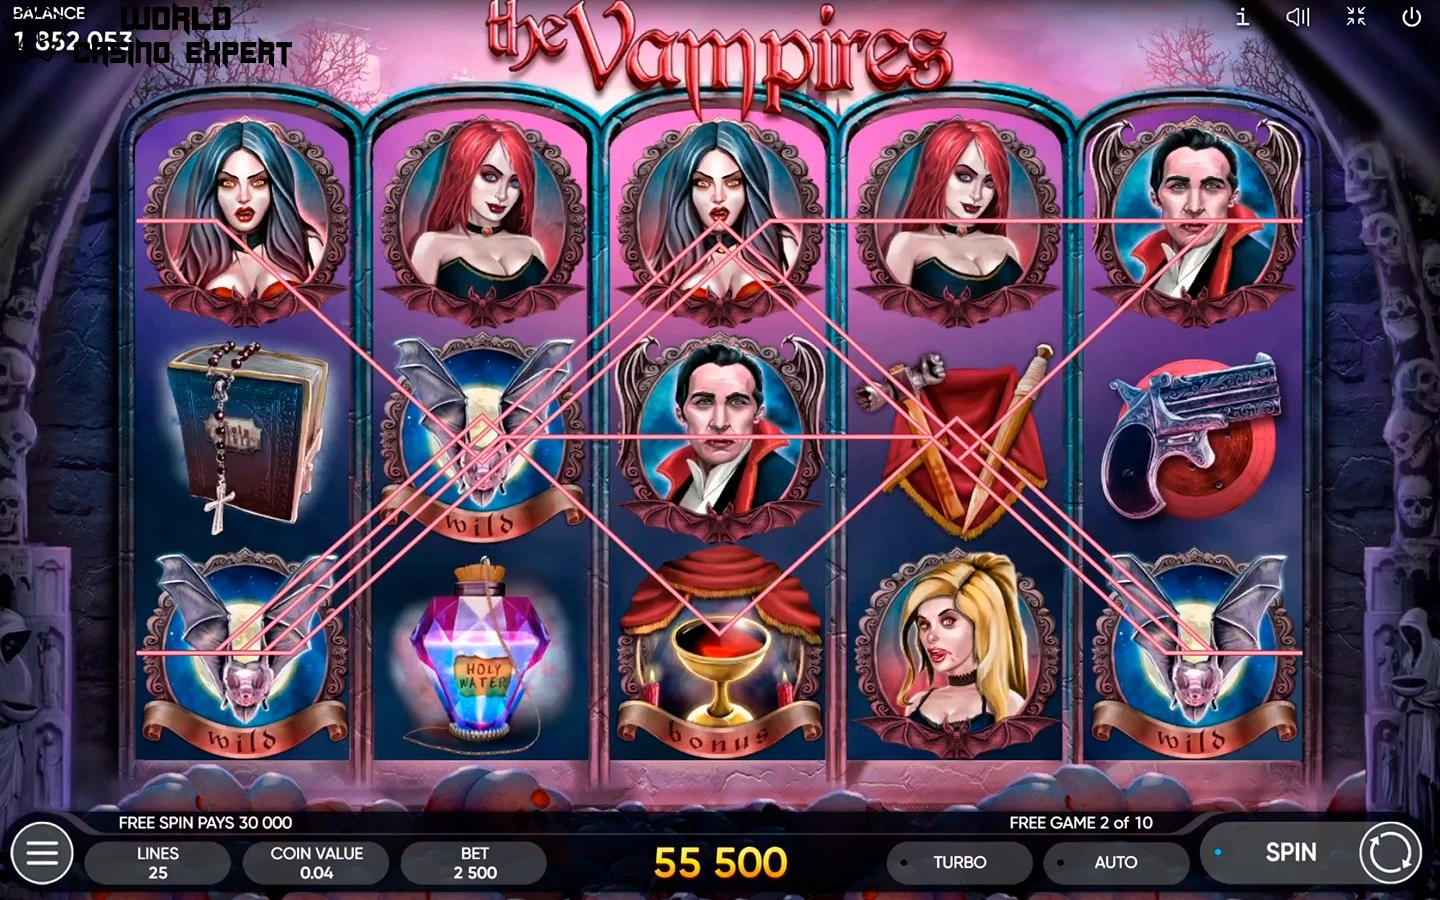 The Vampires Online Slot